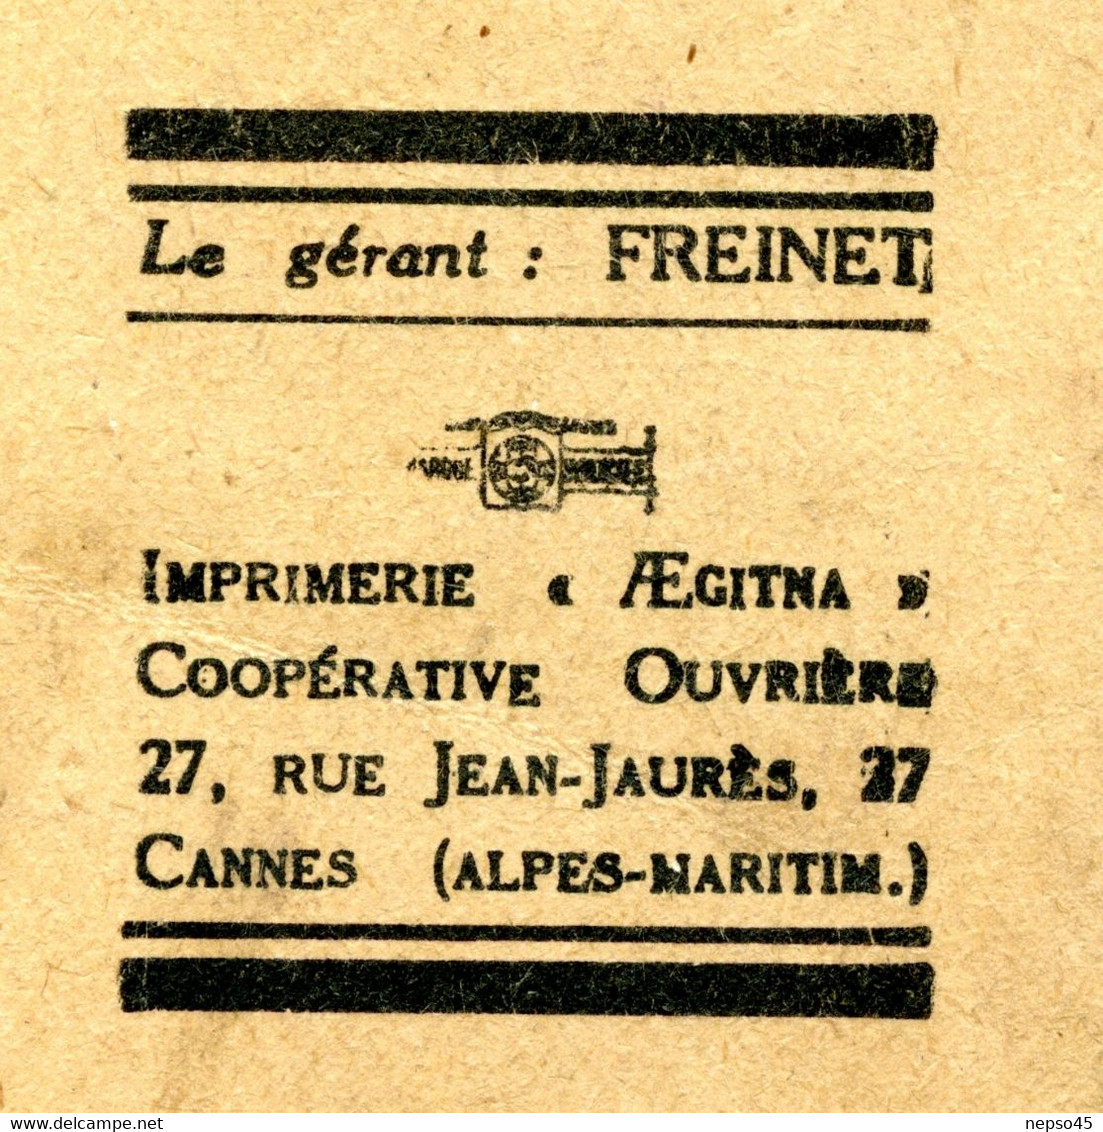 enfantines.maison d'enfants de fusillés et déportés de Ville-d'-Avray Seine et Oise. DÉPORTÉ ! dessins d'élèves.1946.